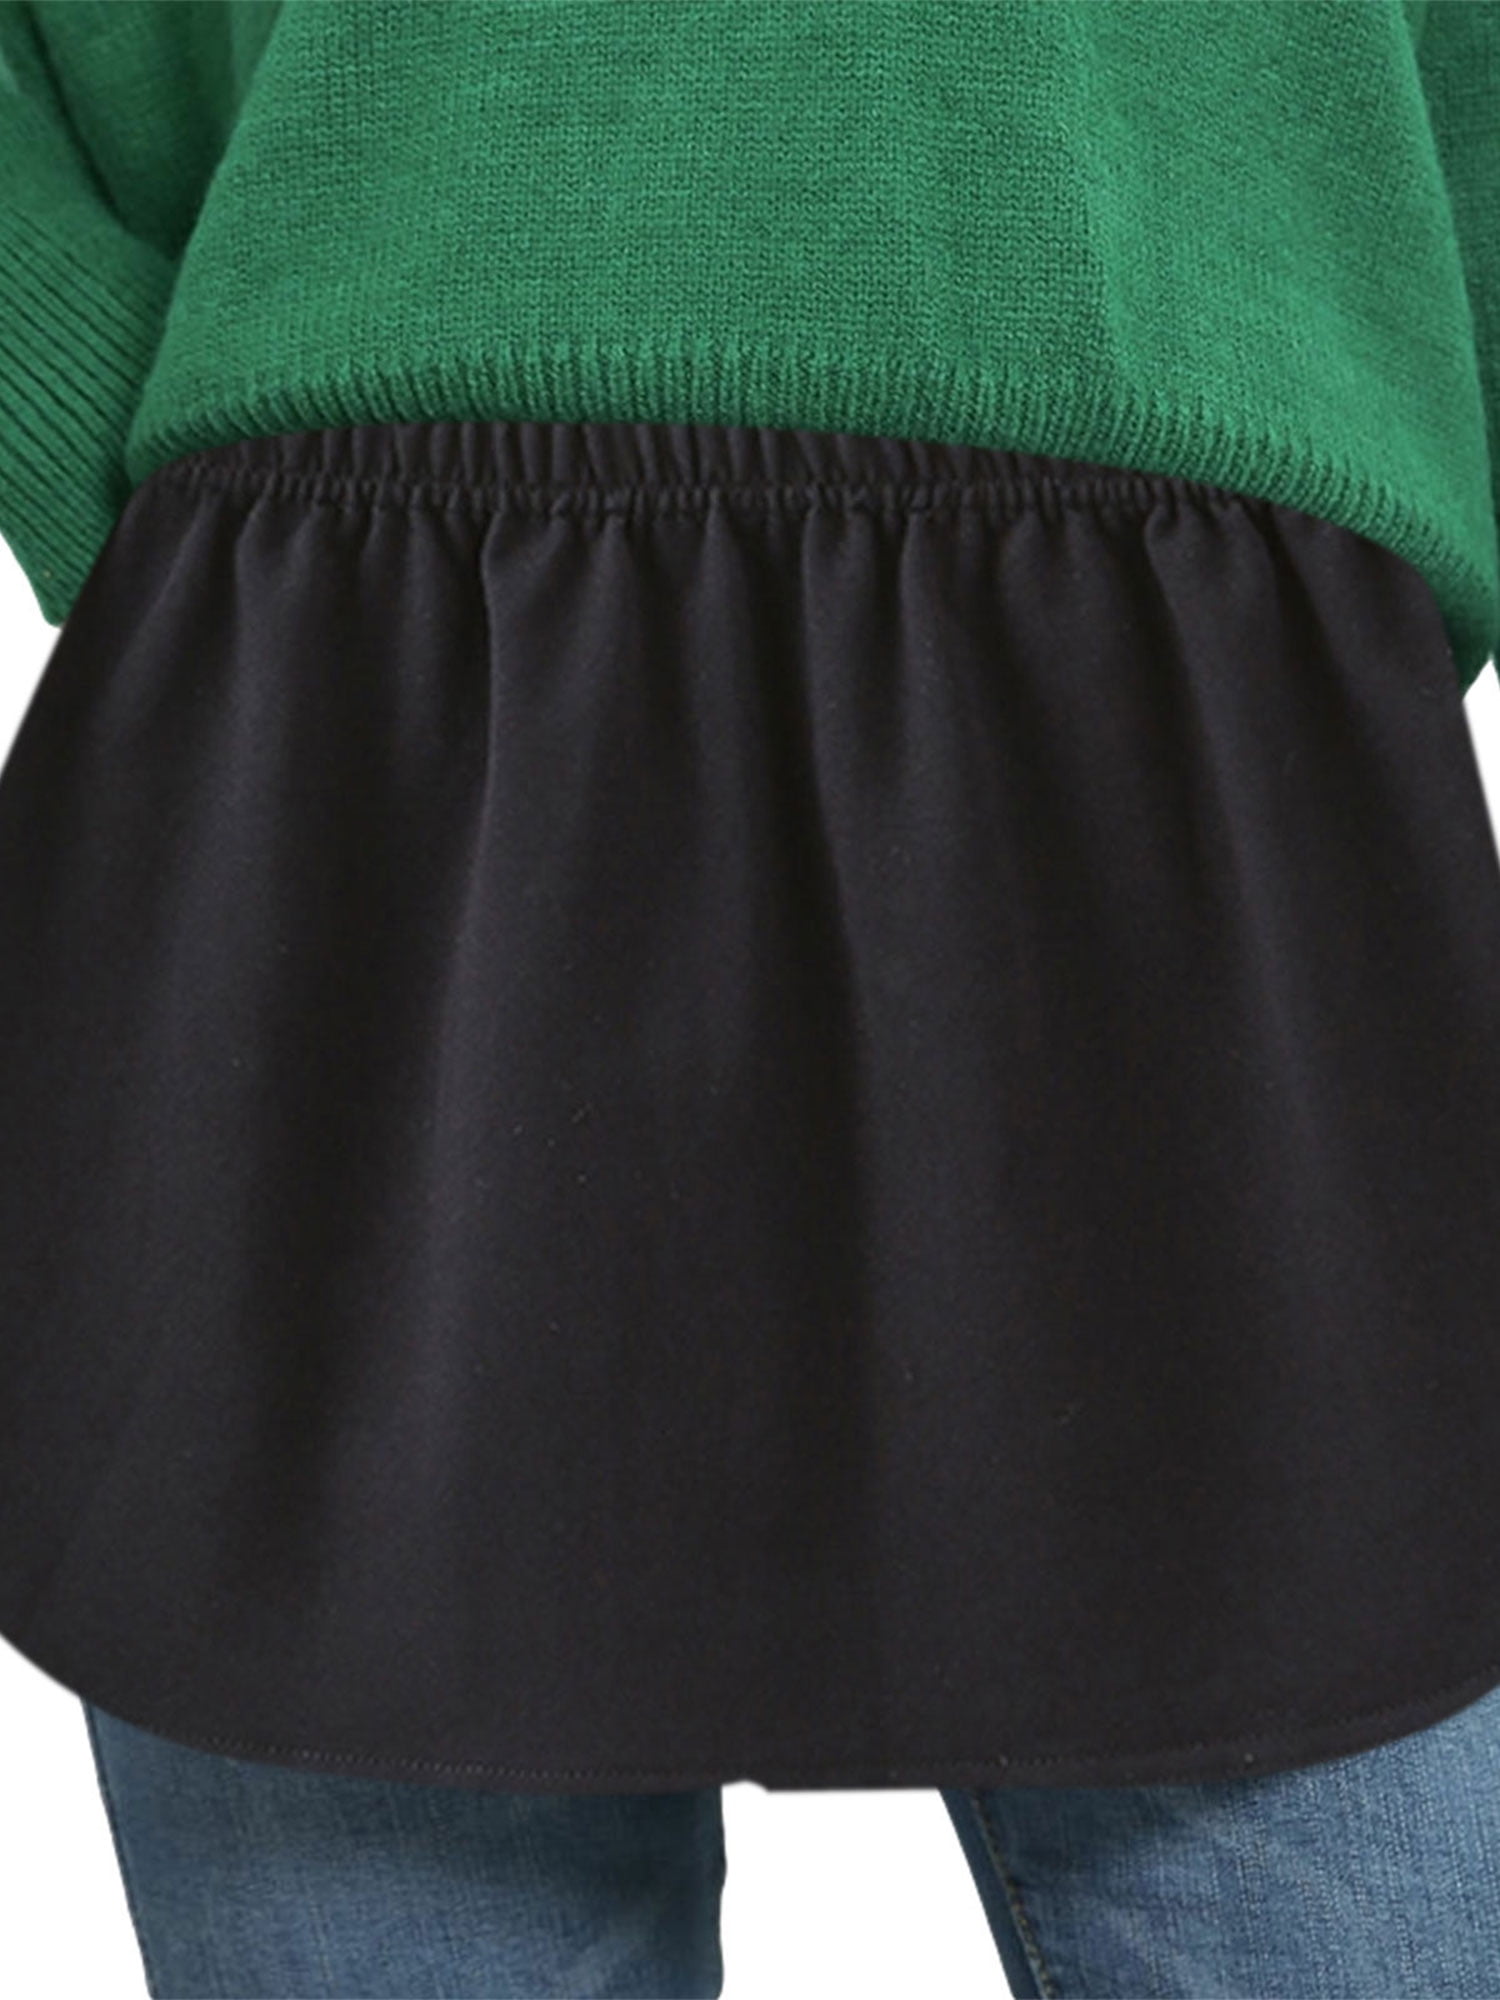 Women's Shirt Extender Skirt Adjustable Layered Fake Top Hem Lower Sweep Half Slip Mini Underskirt Set 